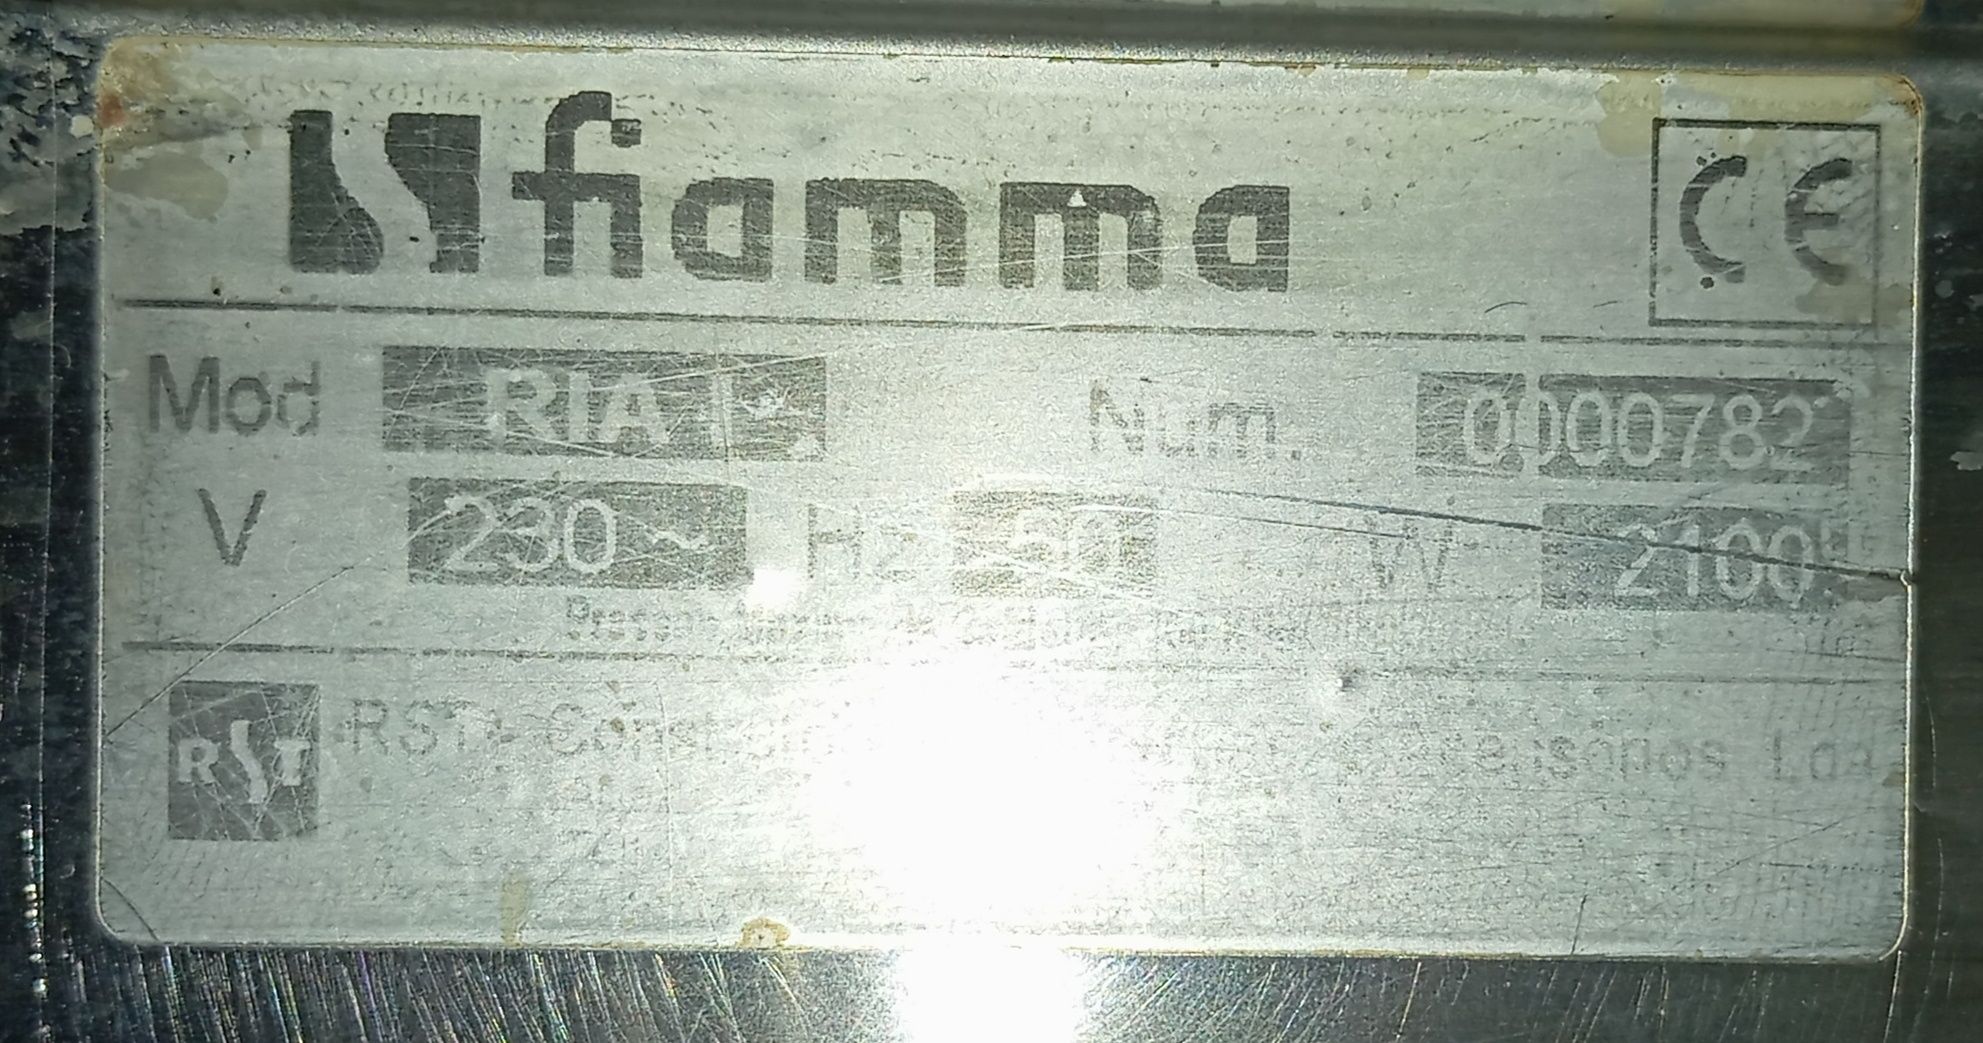 Máquina de Café FIAMMA RIA I